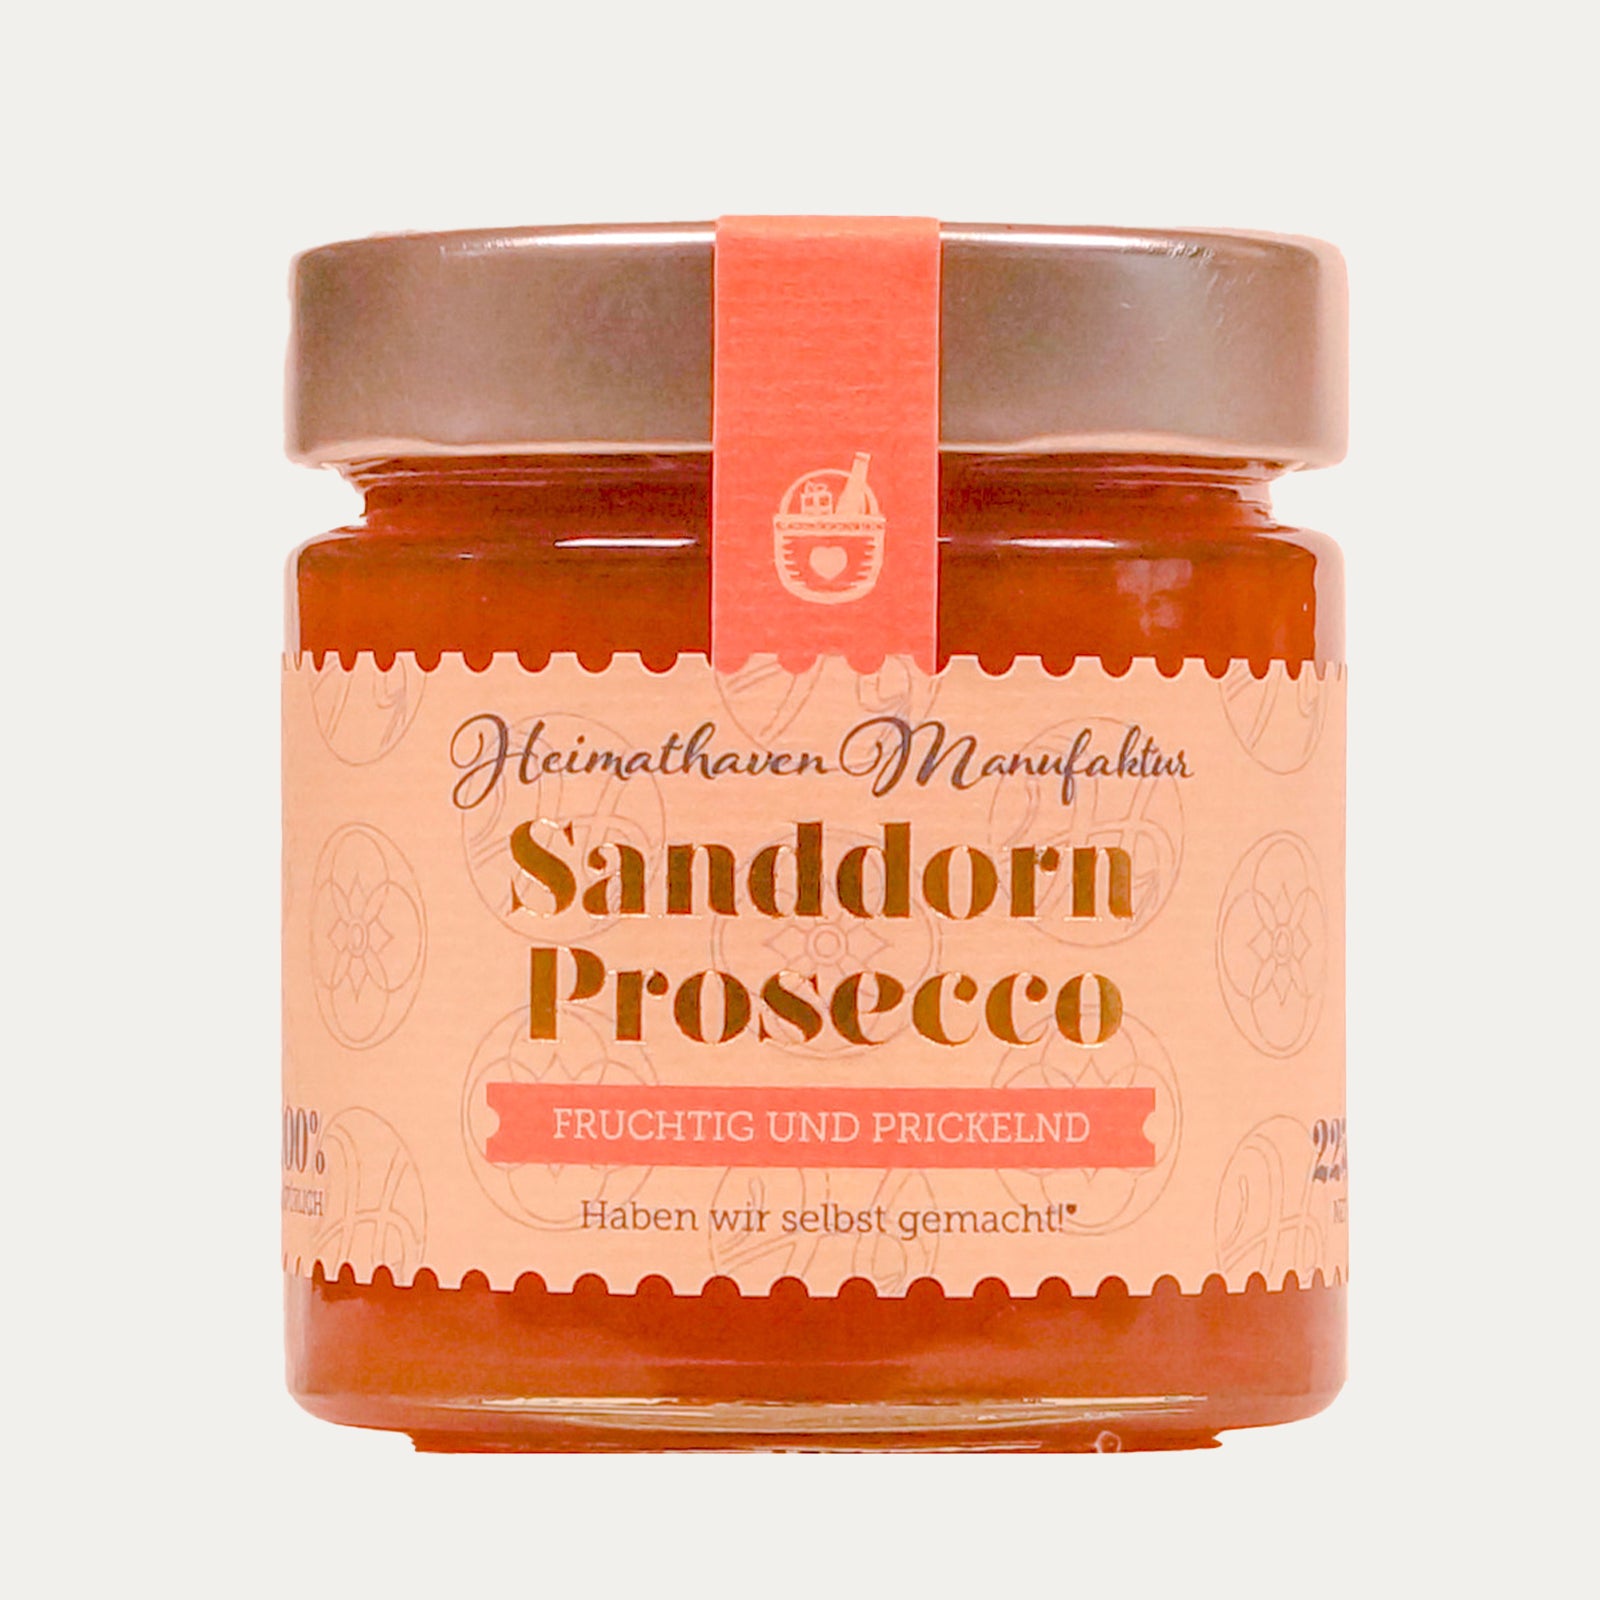 Sanddorn Prosecco – Fruchtaufstrich 225g